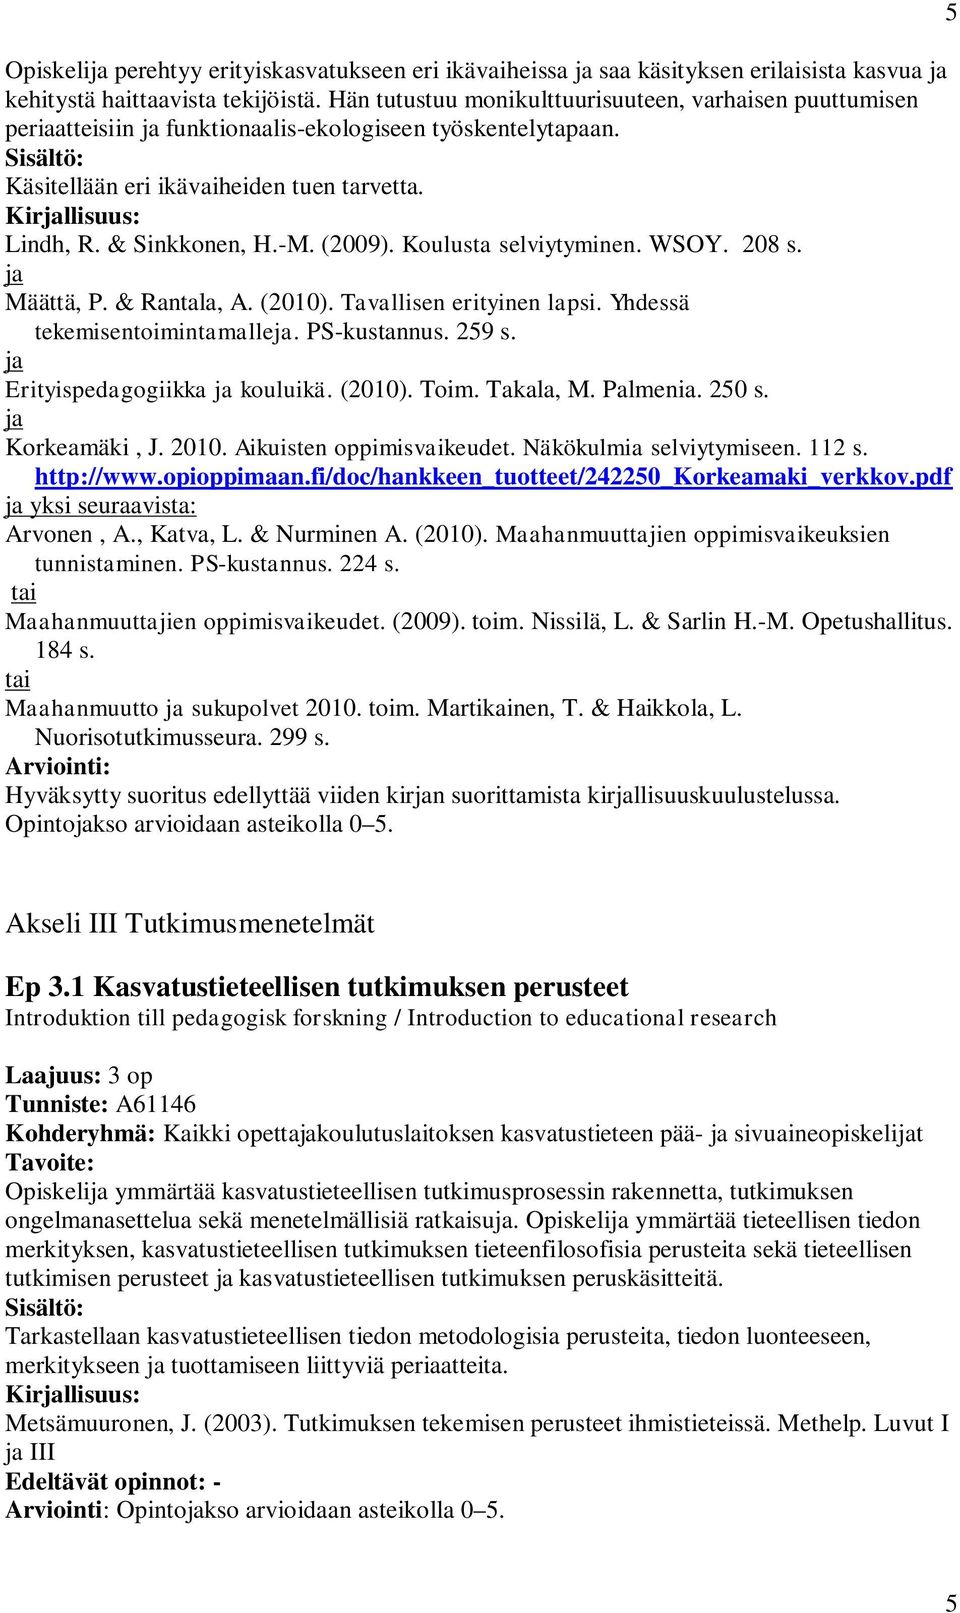 Koulusta selviytyminen. WSOY. 208 s. ja Määttä, P. & Rantala, A. (2010). Tavallisen erityinen lapsi. Yhdessä tekemisentoimintamalleja. PS-kustannus. 259 s. ja Erityispedagogiikka ja kouluikä. (2010). Toim.